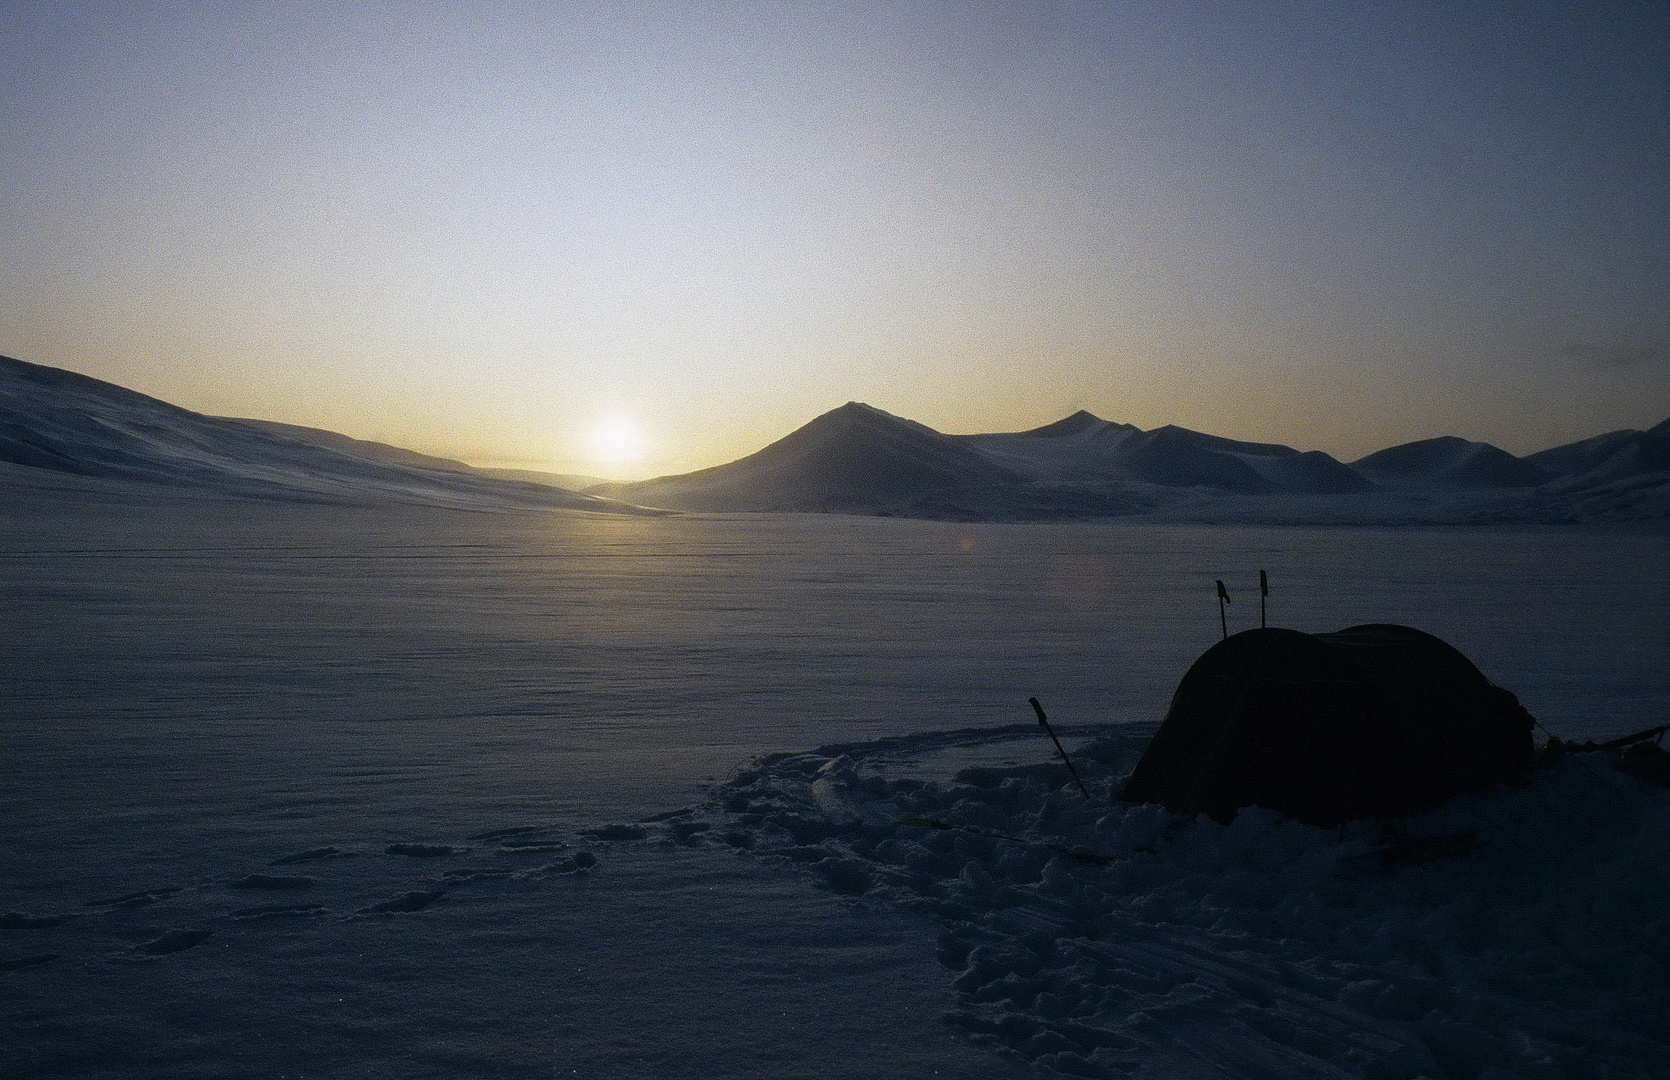 Svalbard - Mittagssonne im Spätwinter